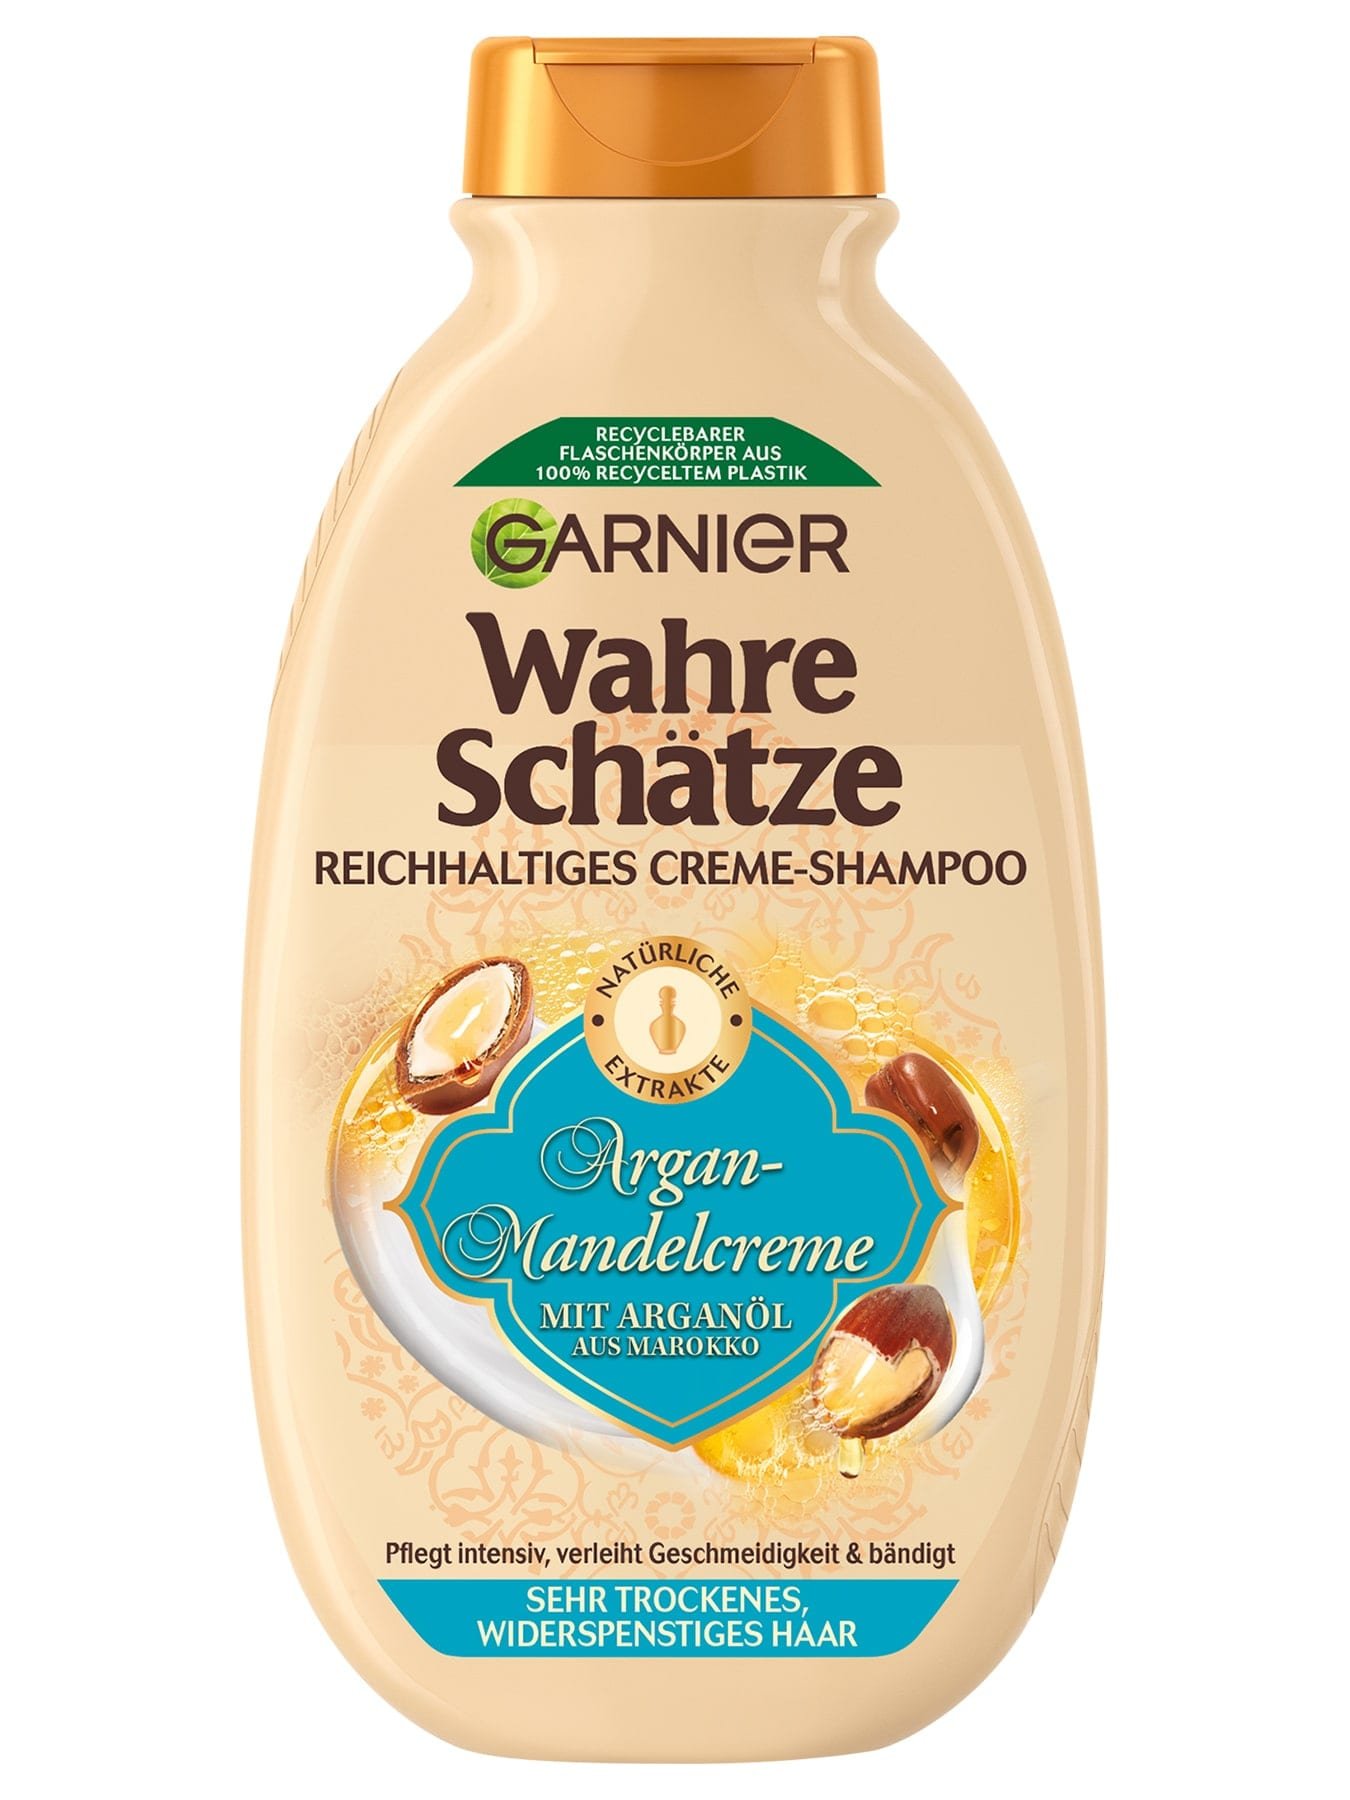 Wahre Schätze Reichhaltiges Creme-Shampoo Argan-Mandelcreme - Produktabbildung